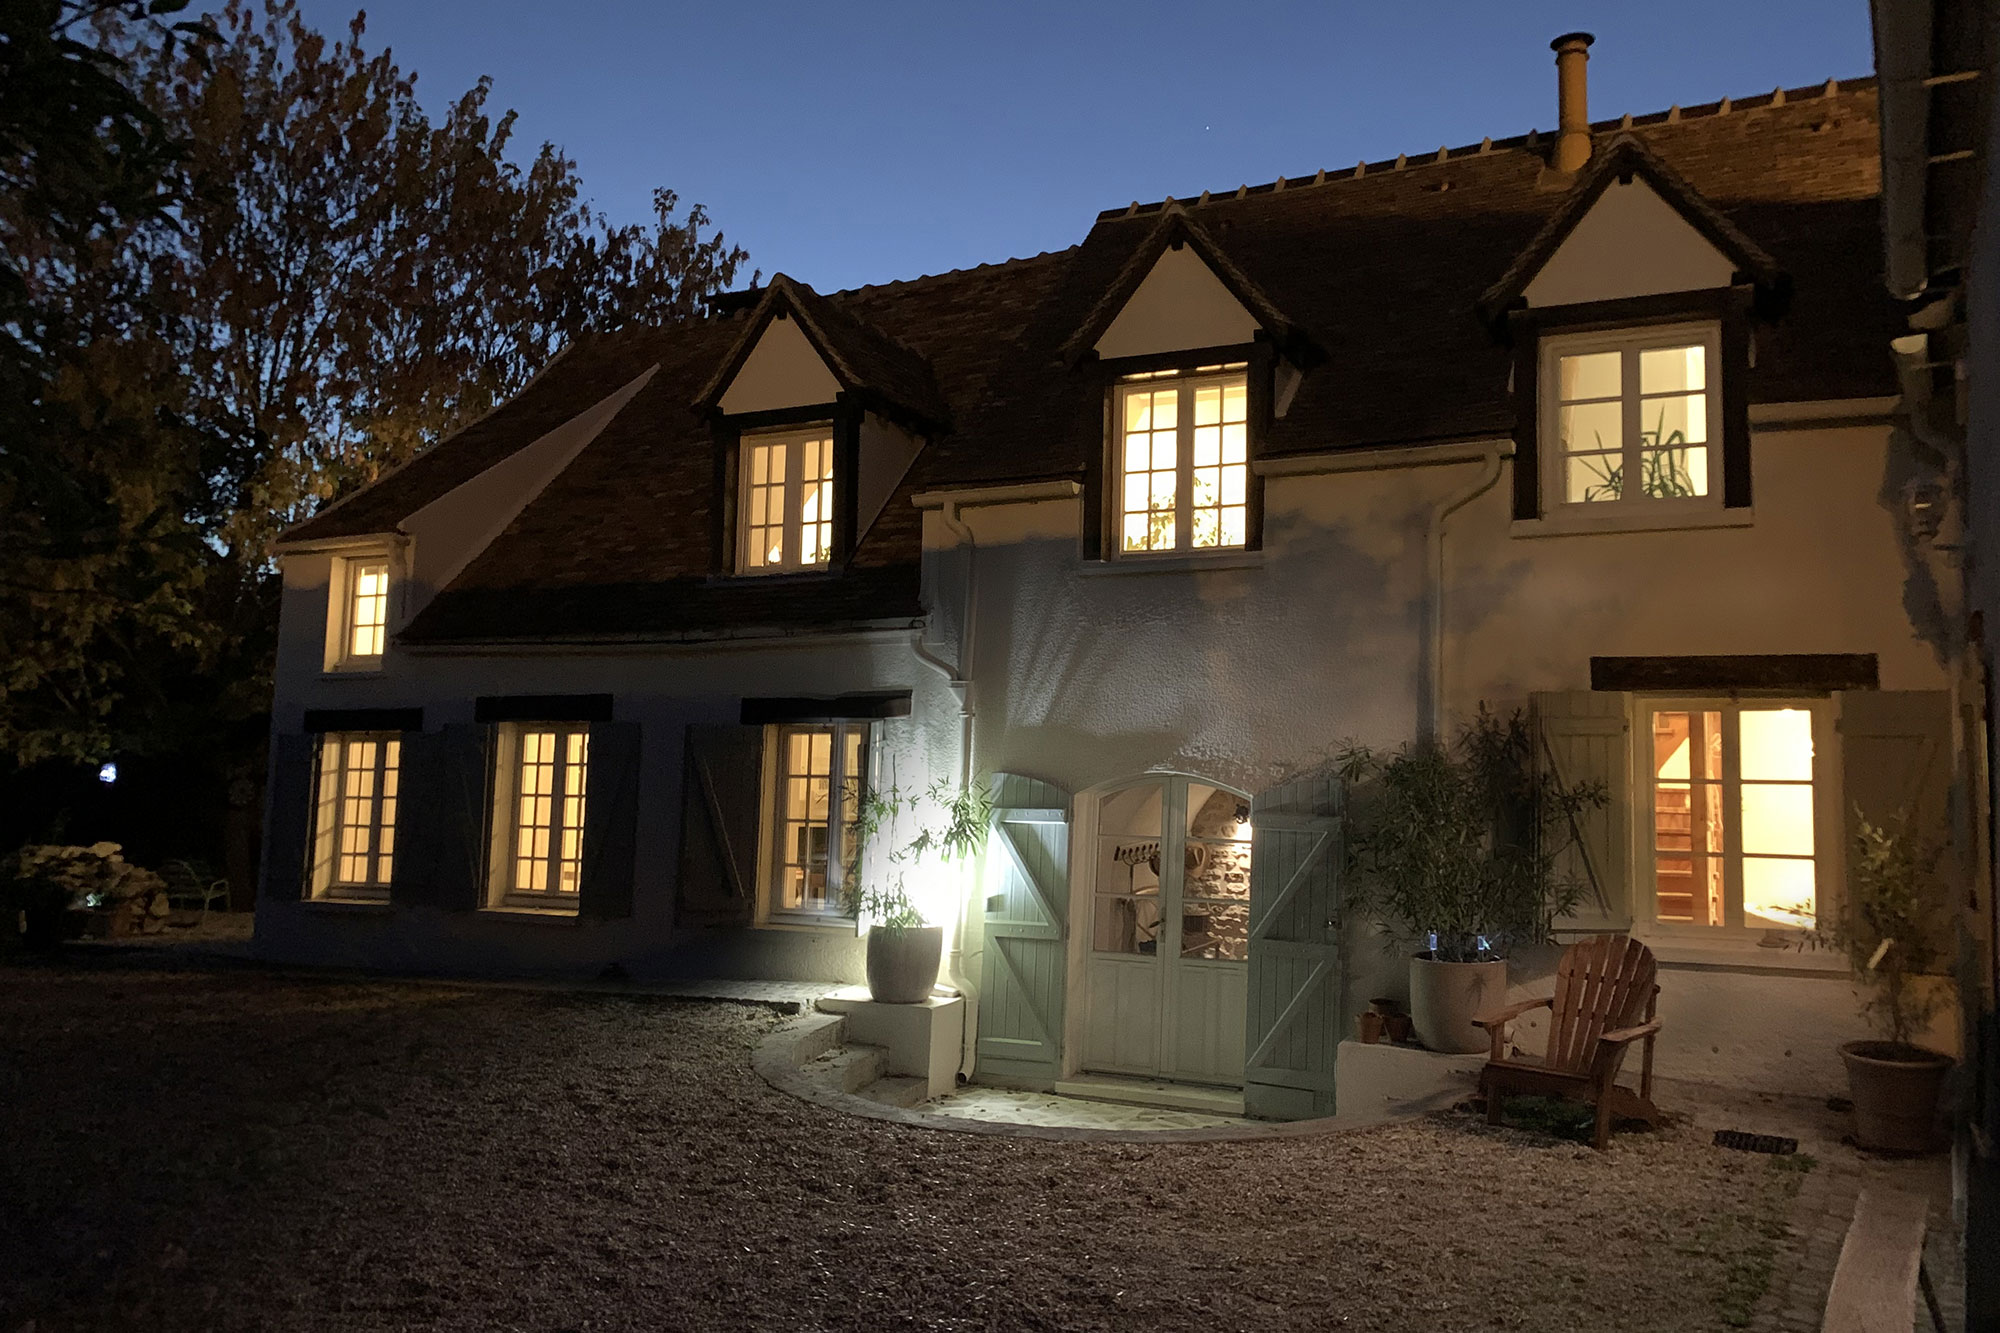 La nuit et à la fraîche, notre maison de campagne dans les Yvelines dévoile tout son charme